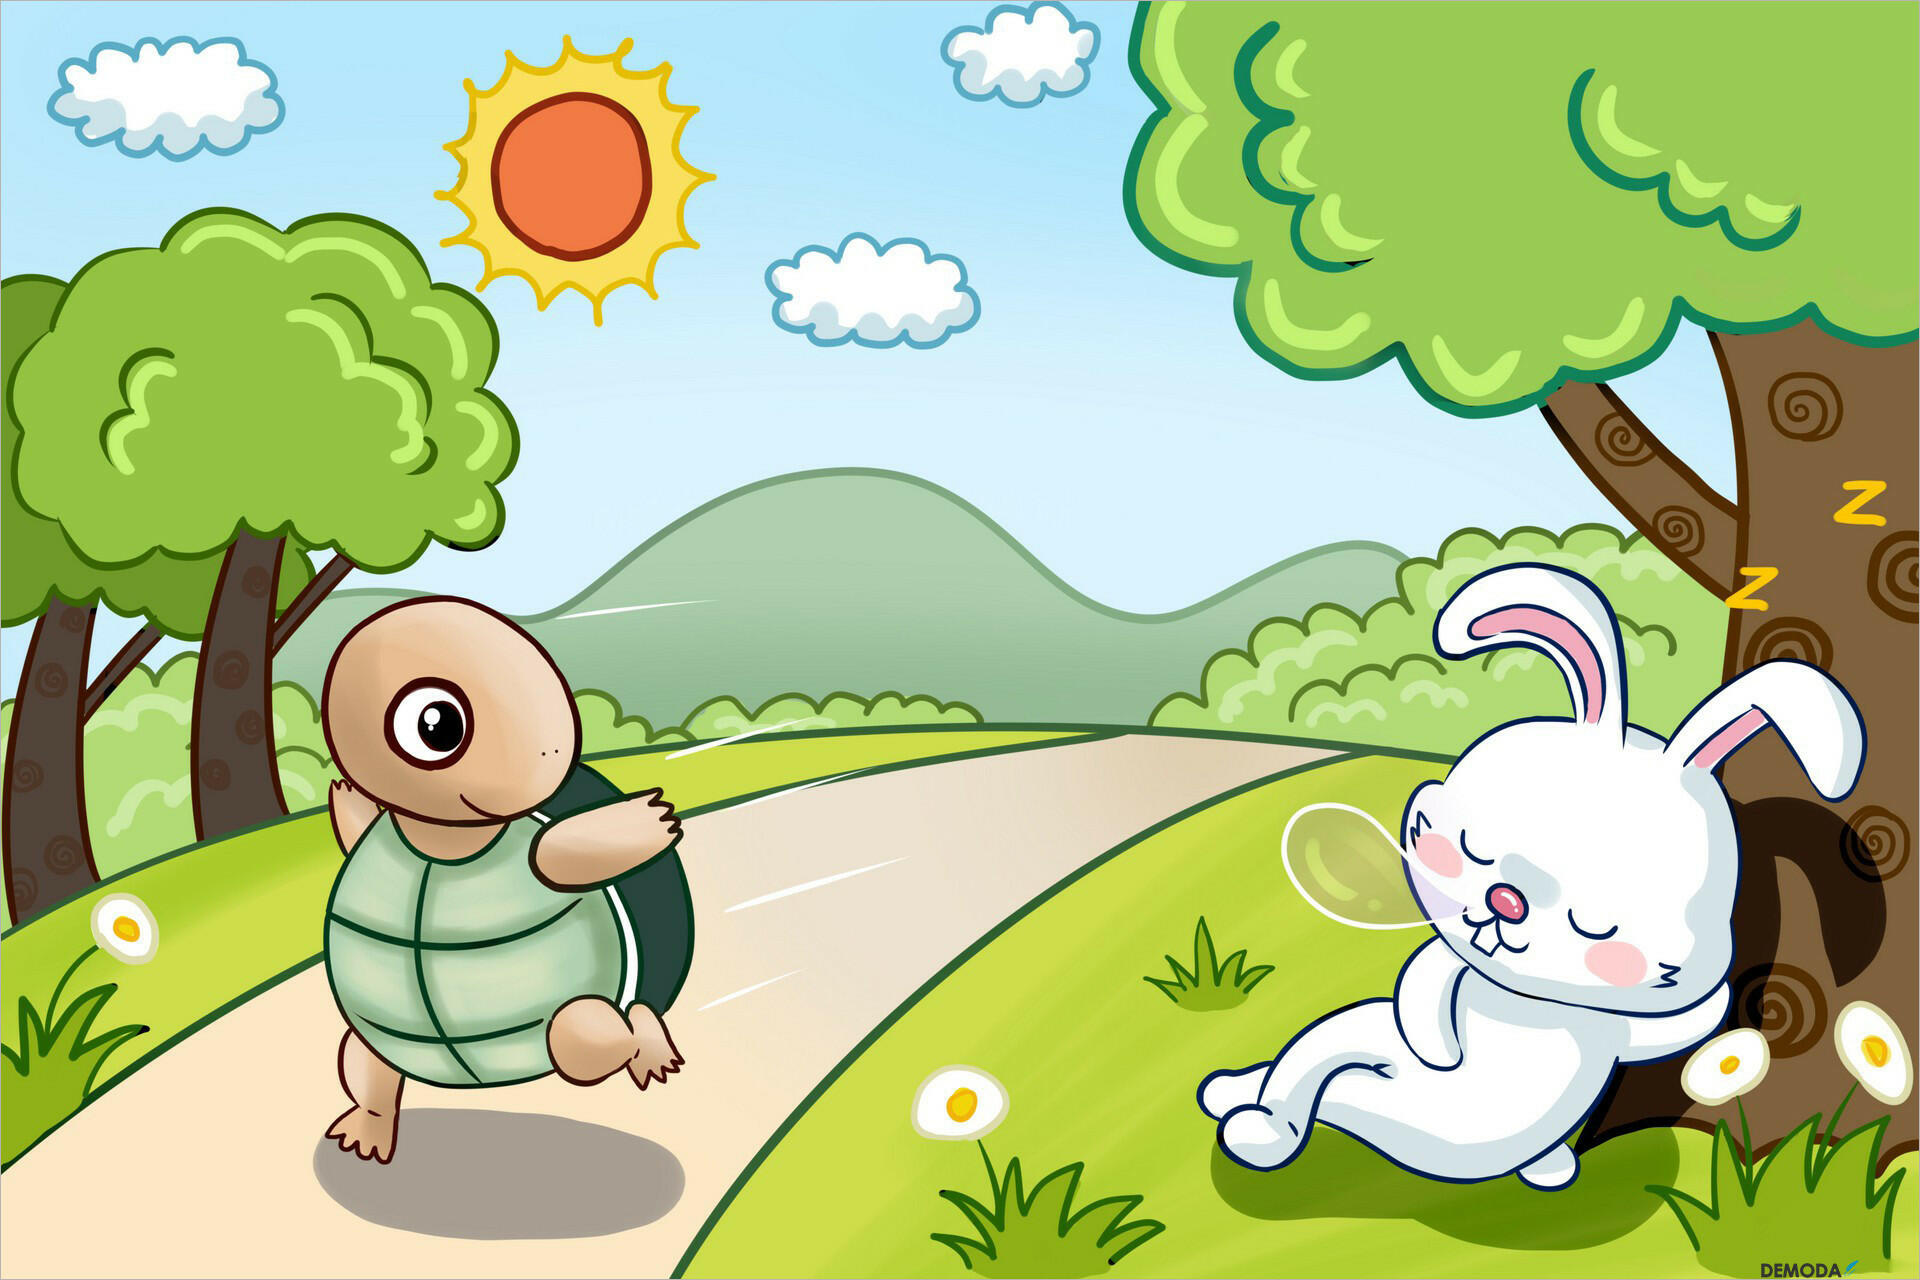 Rùa thắng thỏ là bài học quý giá mà chúng ta cần phải suy ngẫm 